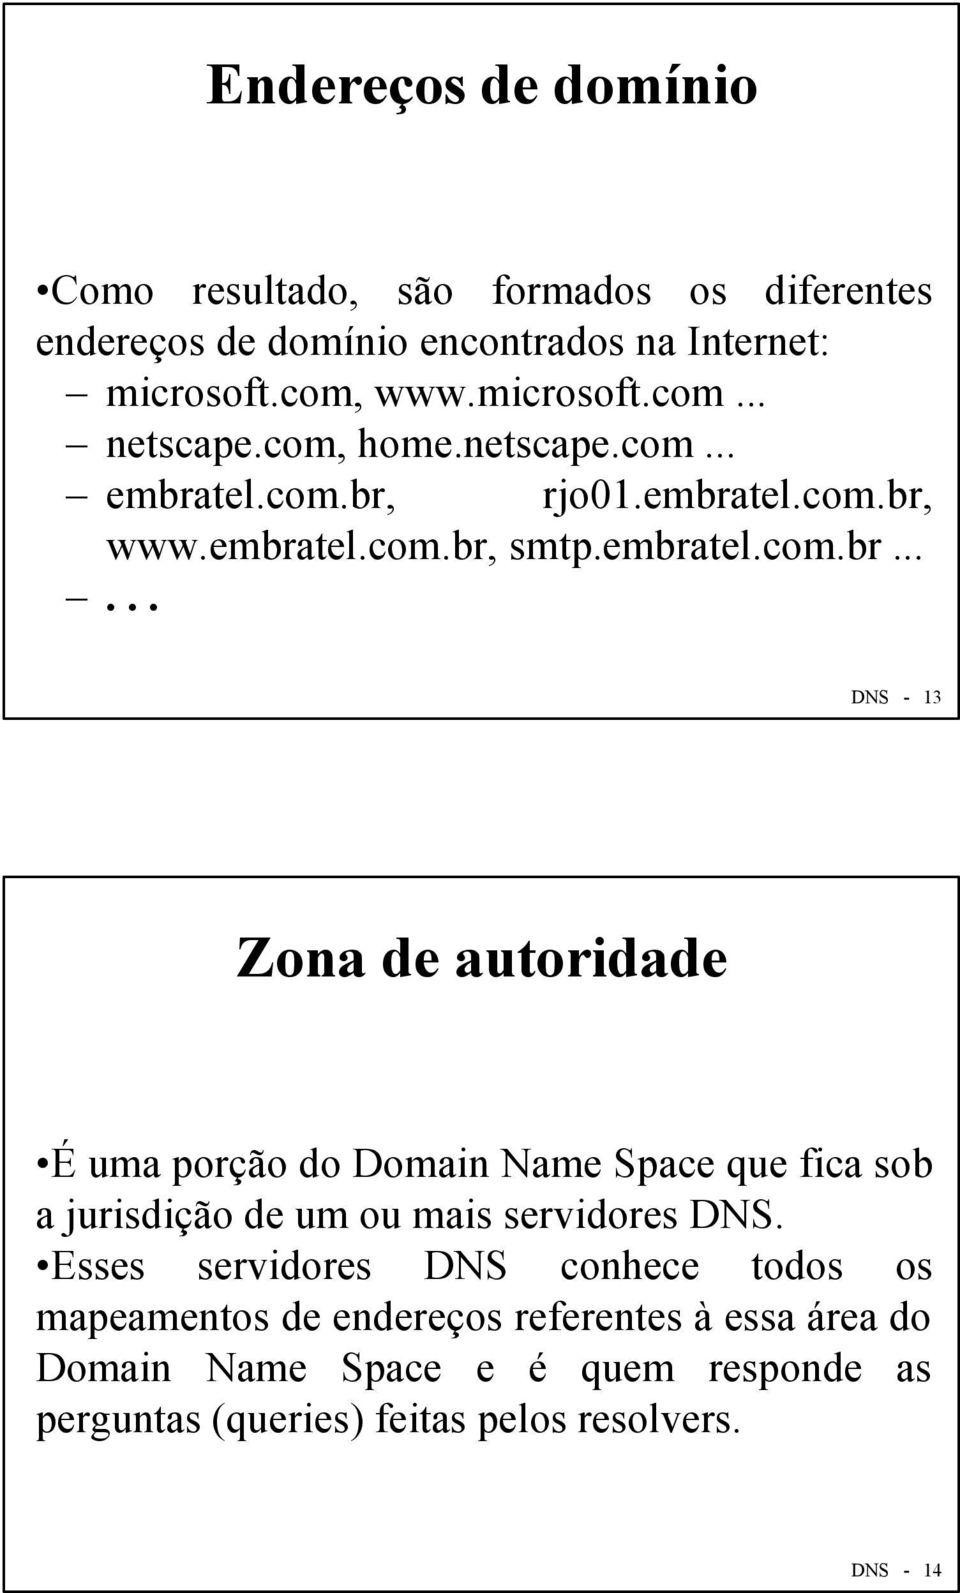 tel.com.br, rjo01.embratel.com.br, www.embratel.com.br, smtp.embratel.com.br...... DNS - 13 Zona de autoridade É uma porção do Domain Name Space que fica sob a jurisdição de um ou mais servidores DNS.